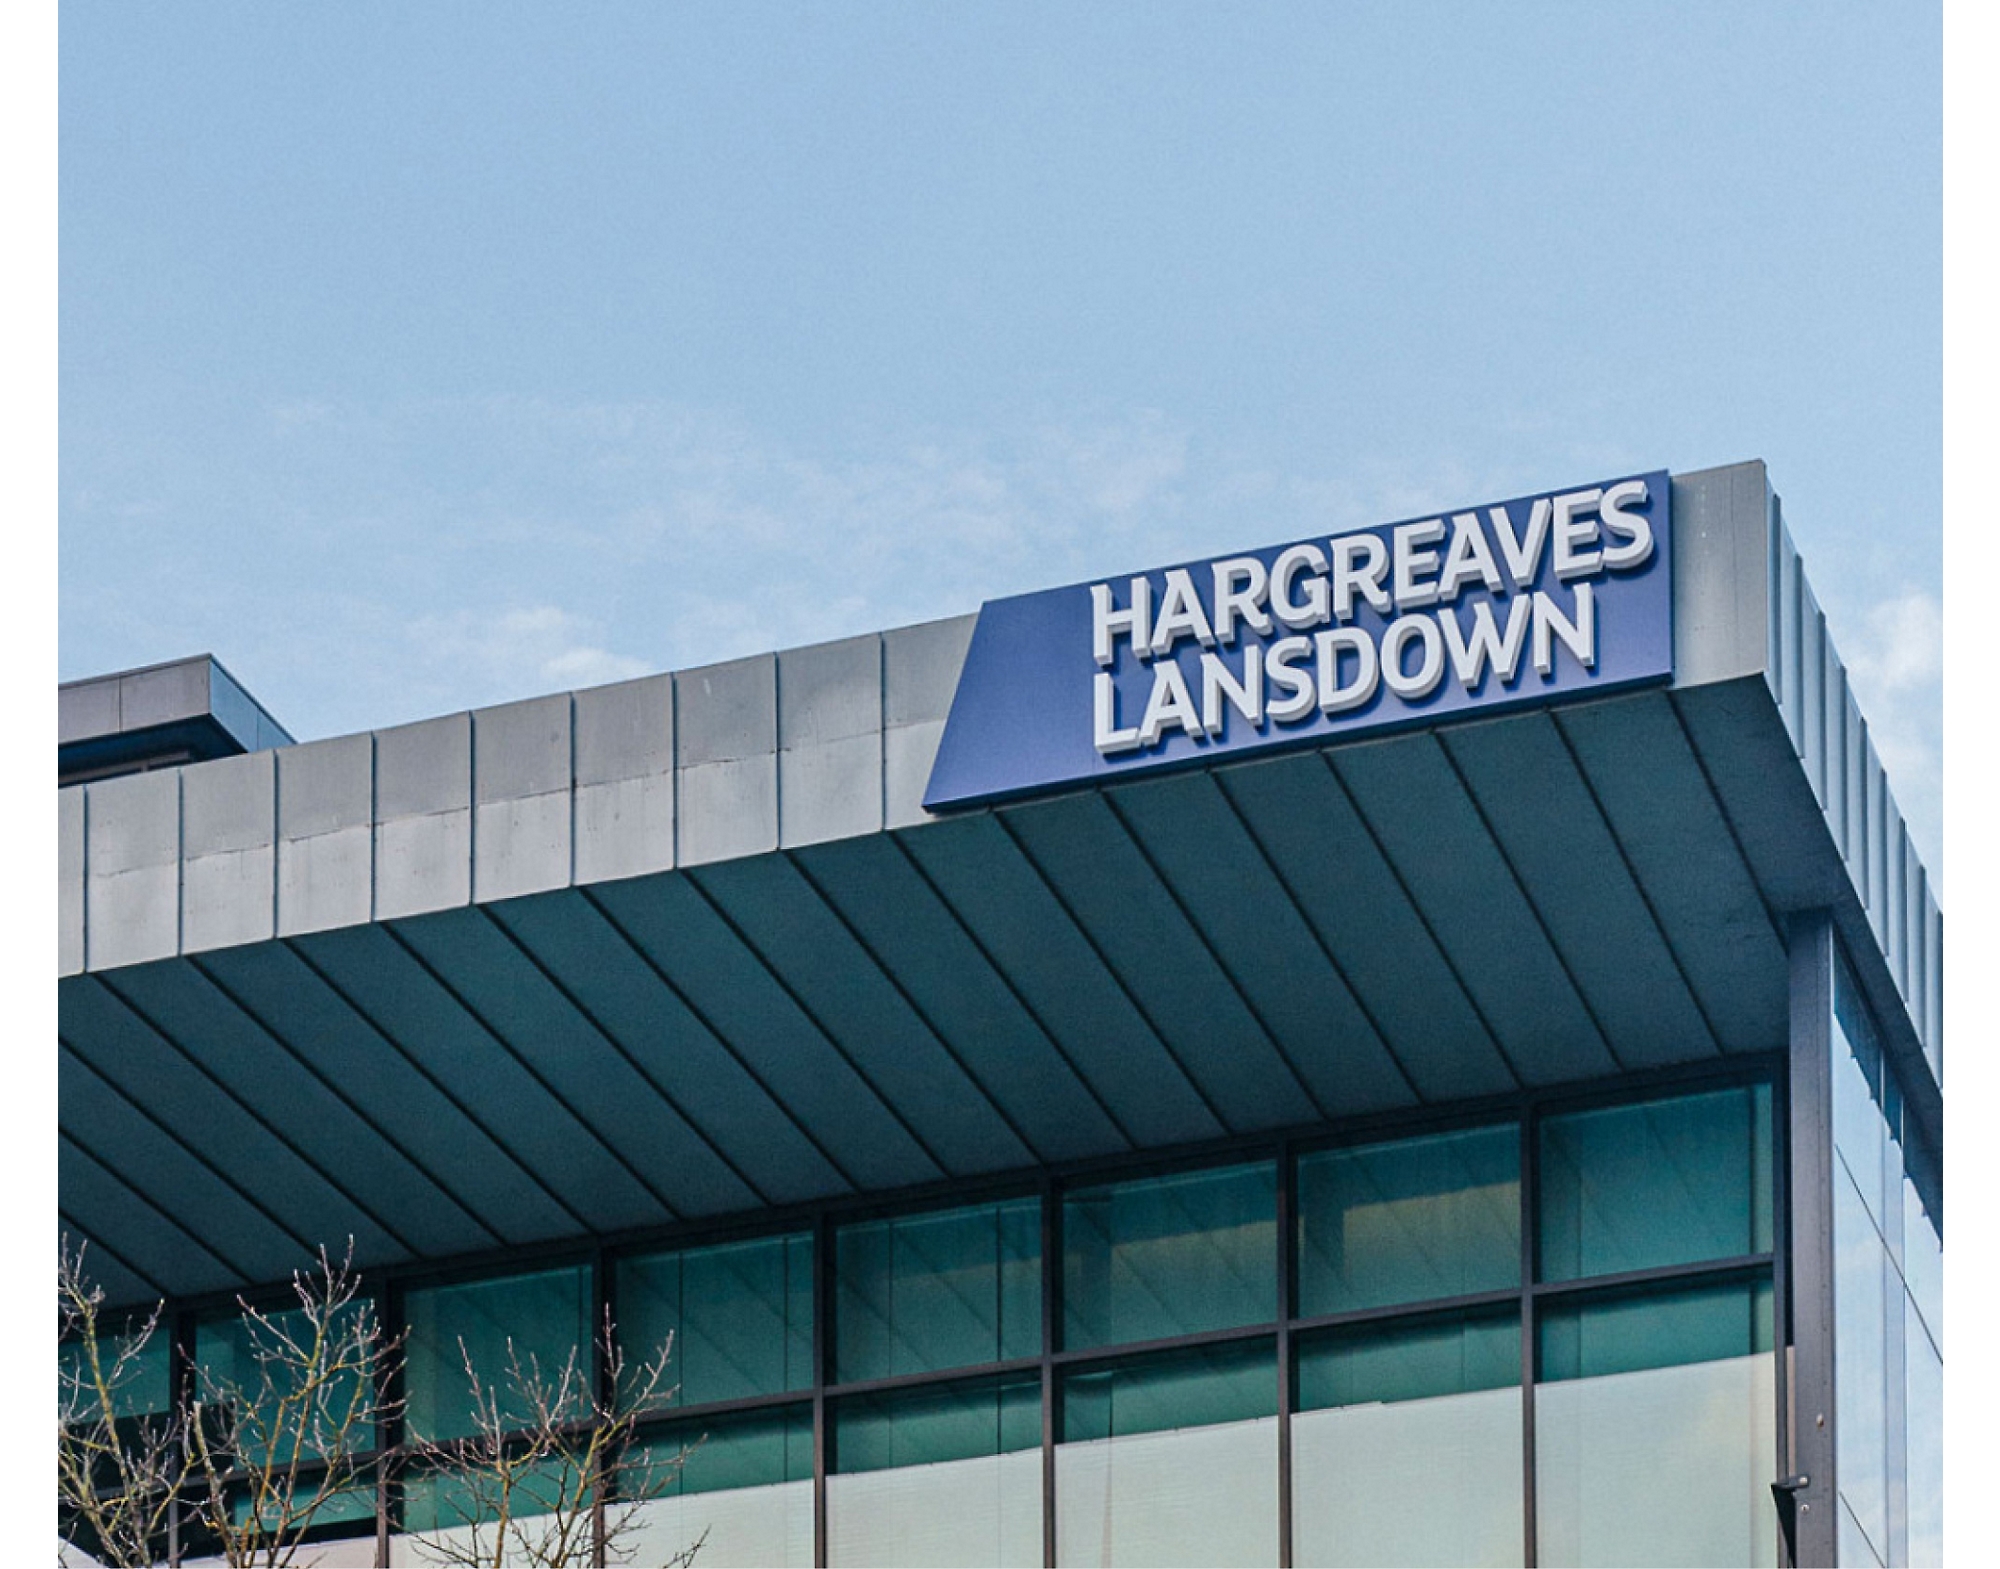 Znak "hargreaves landdown" na vrhu moderne zgrade s vedrim nebom u pozadini.